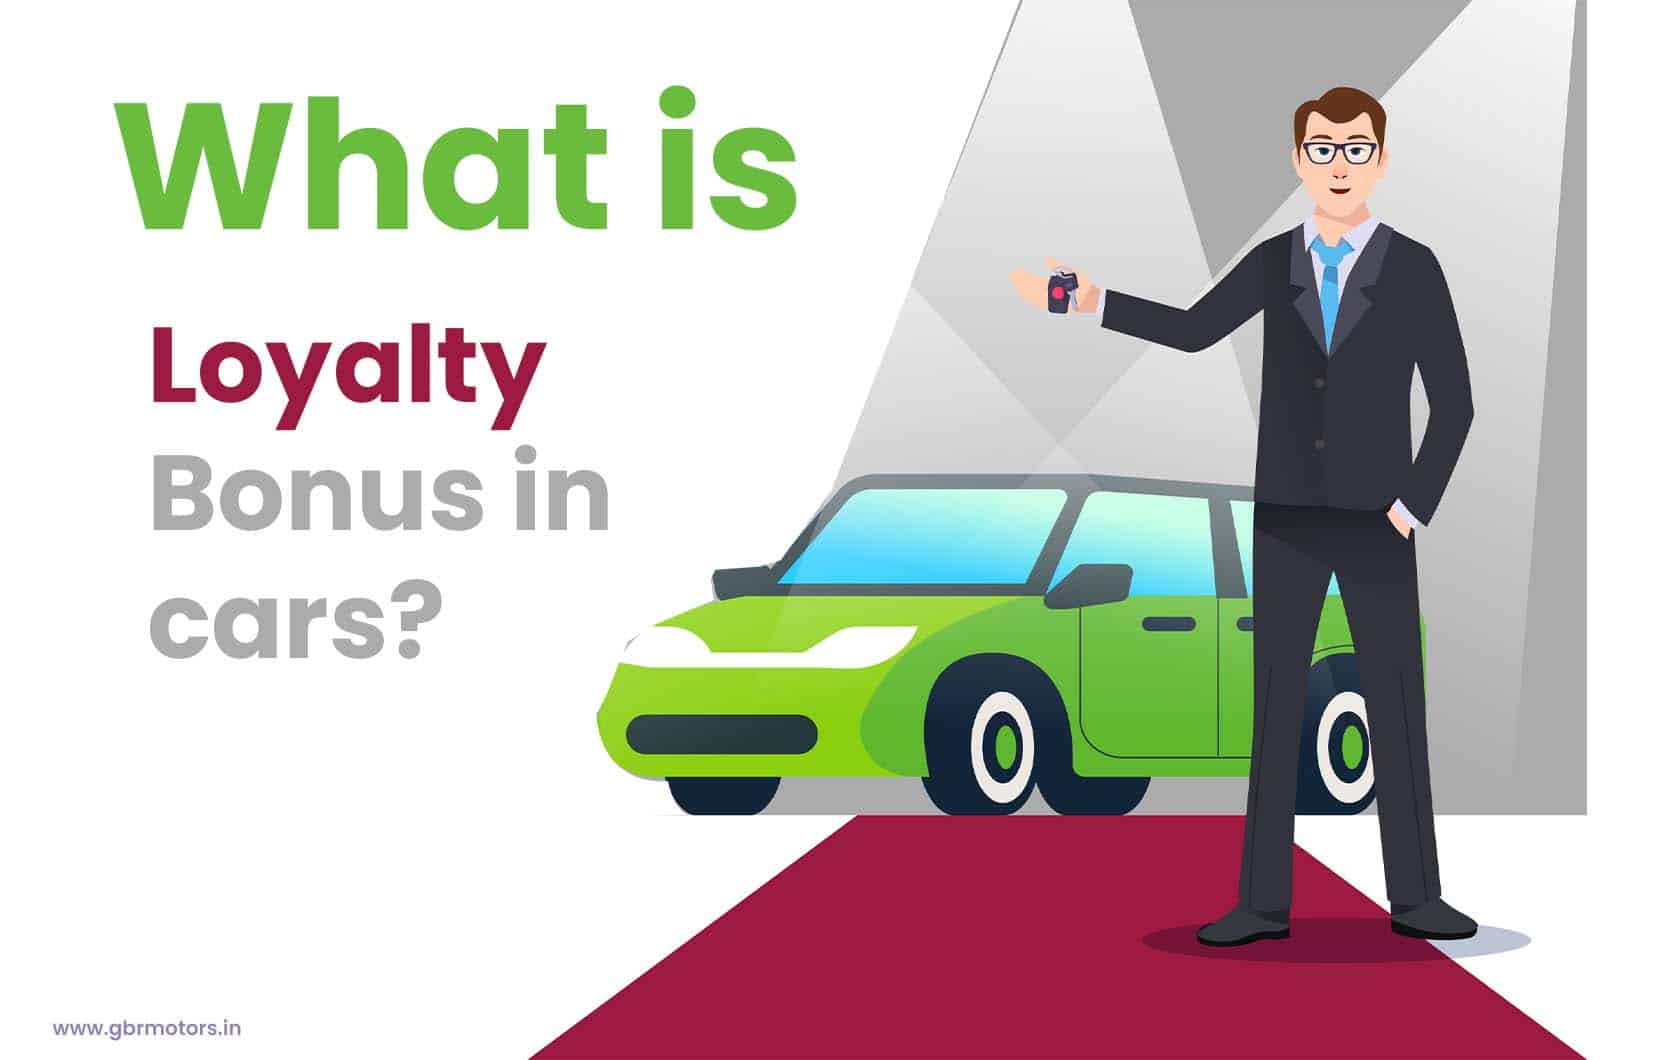 What is loyalty bonus in cars?